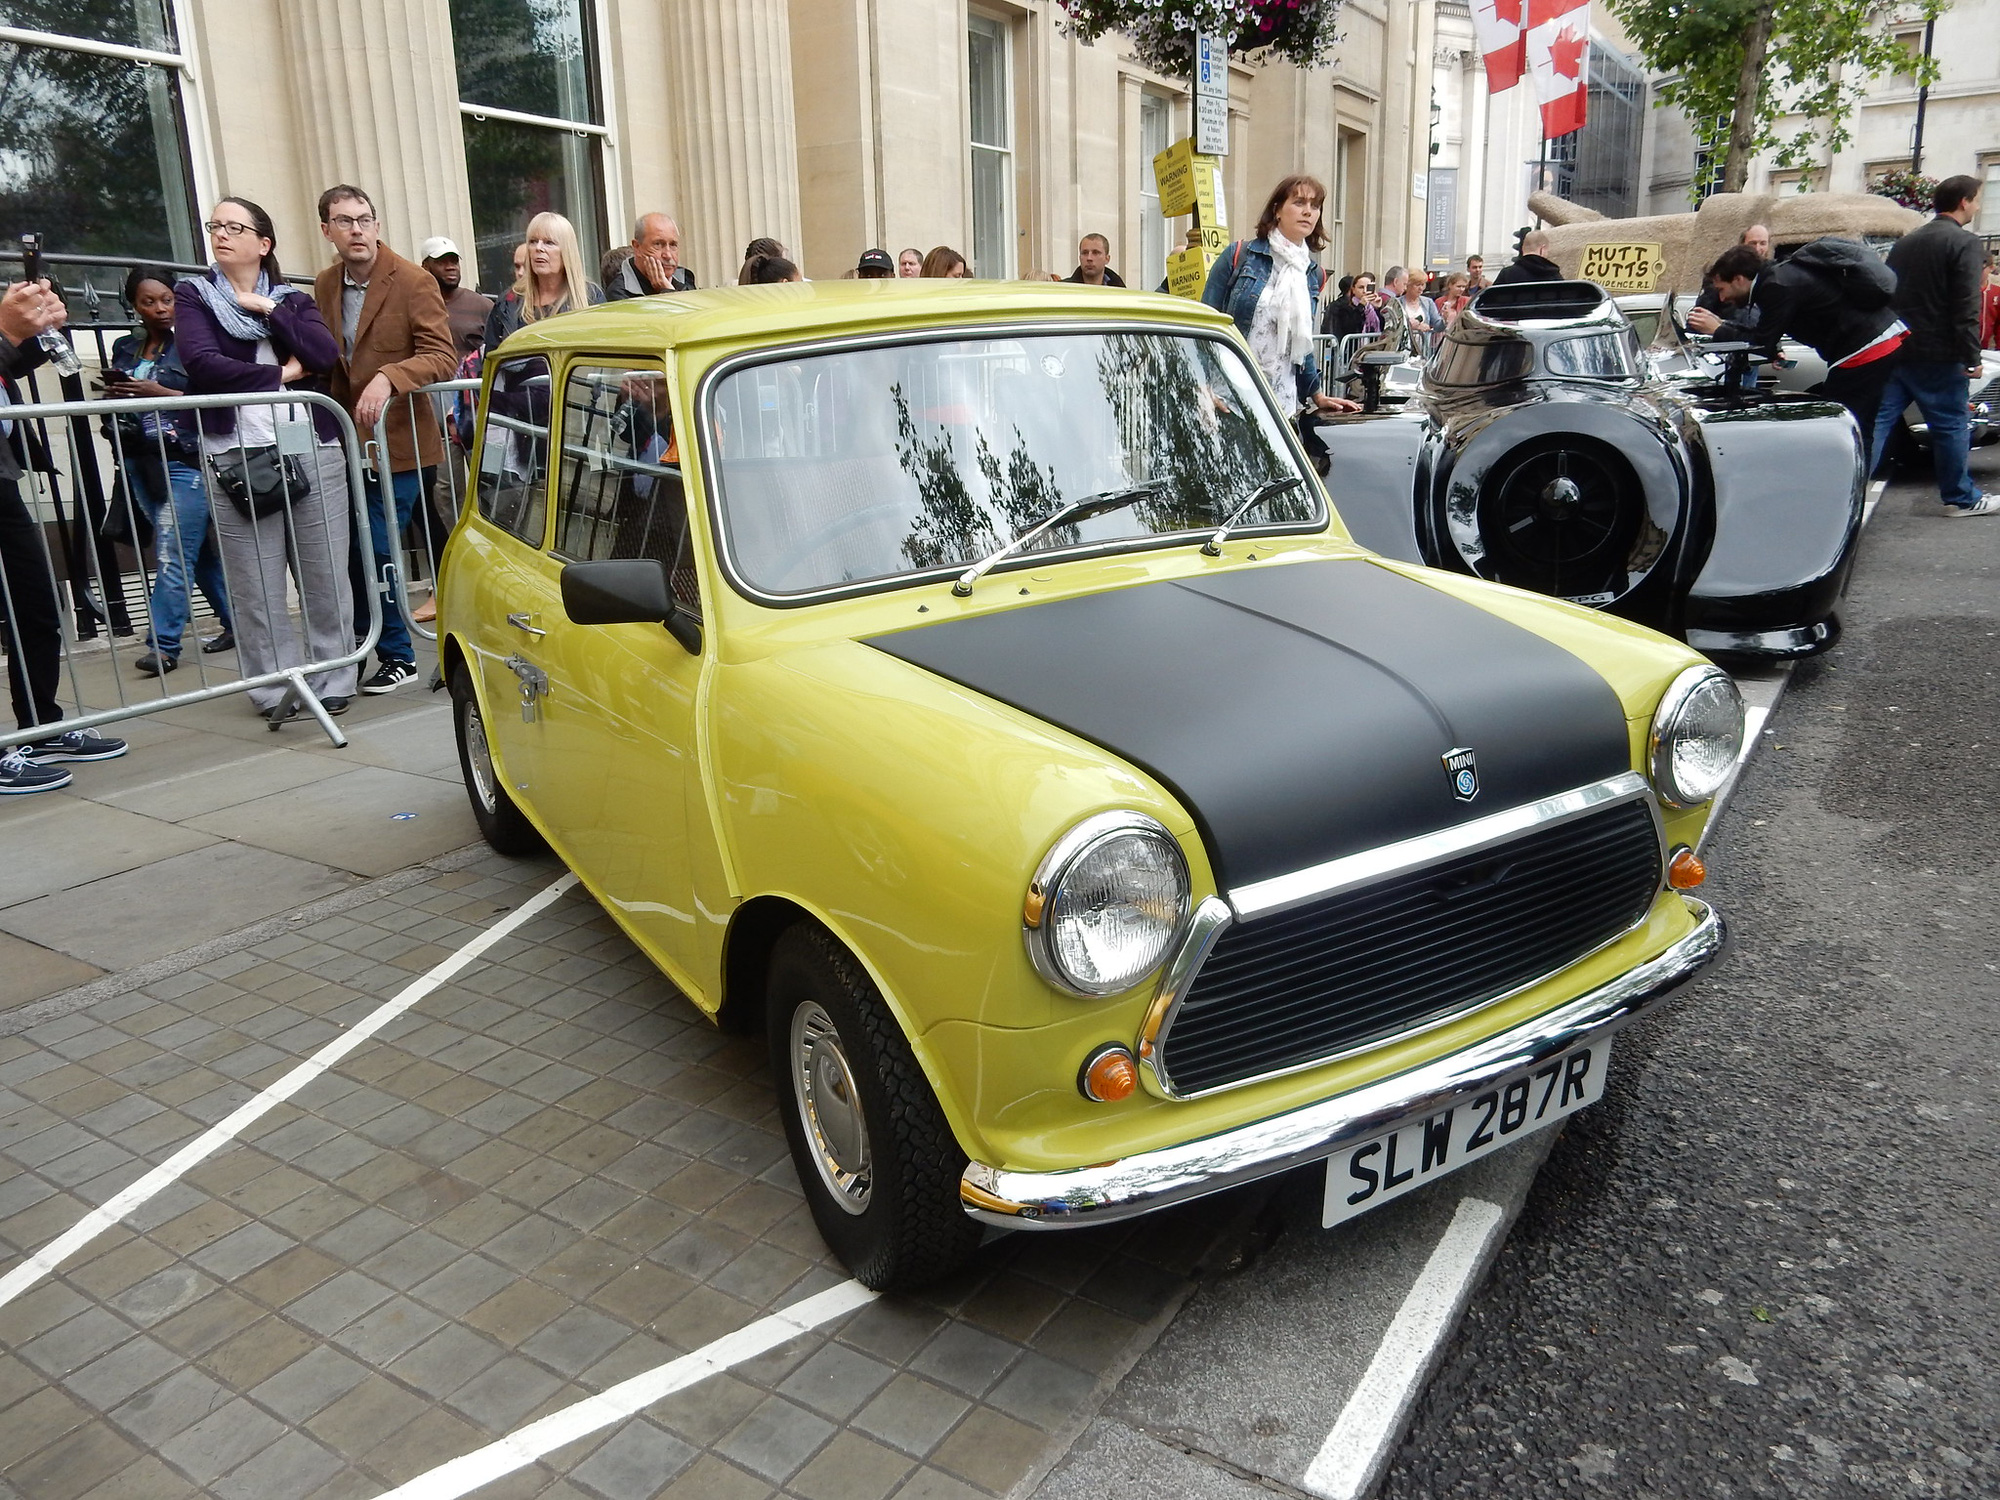 Mr.Bean rất yêu siêu xe nhưng có vẻ siêu xe không yêu ông cho lắm #sie... |  TikTok